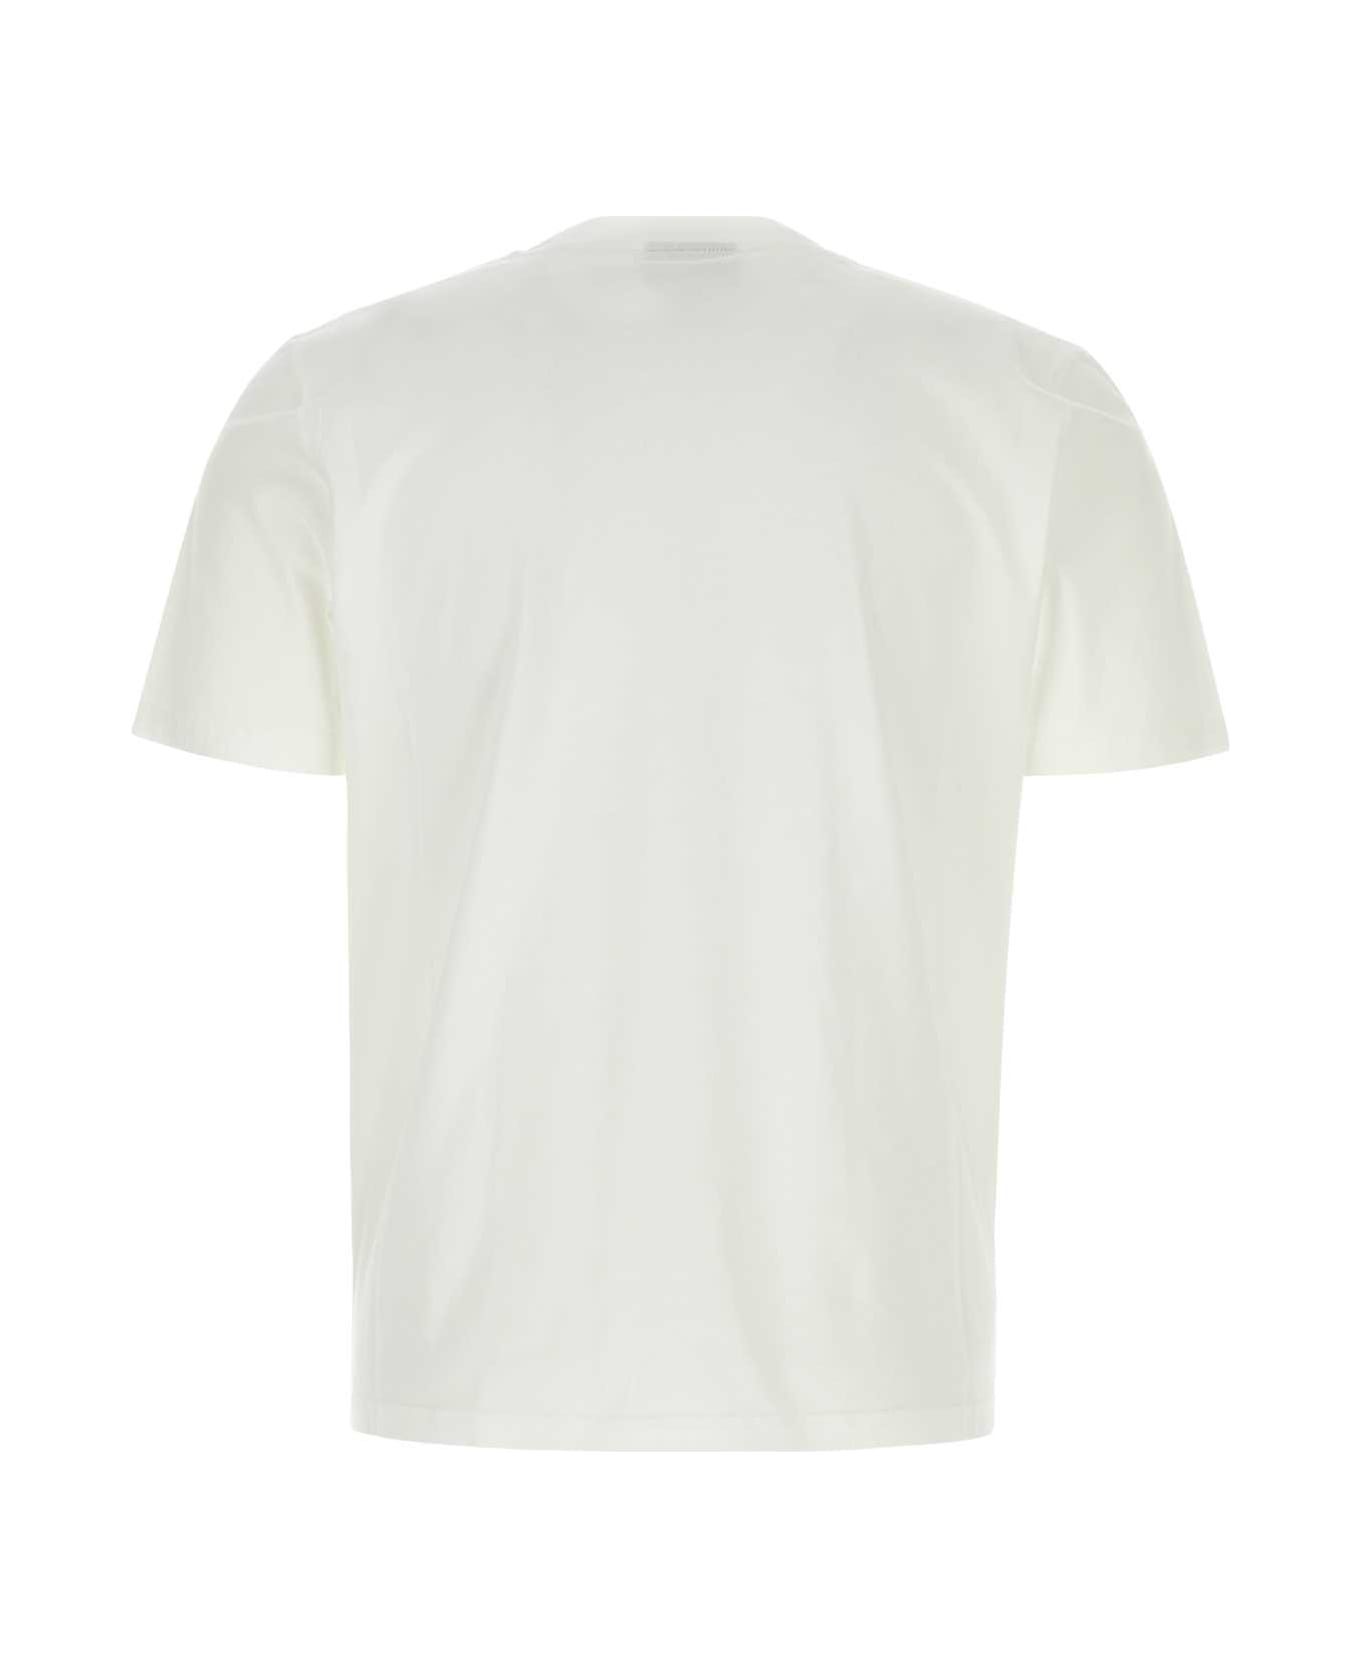 Botter White Cotton T-shirt - WHITECOL Tシャツ